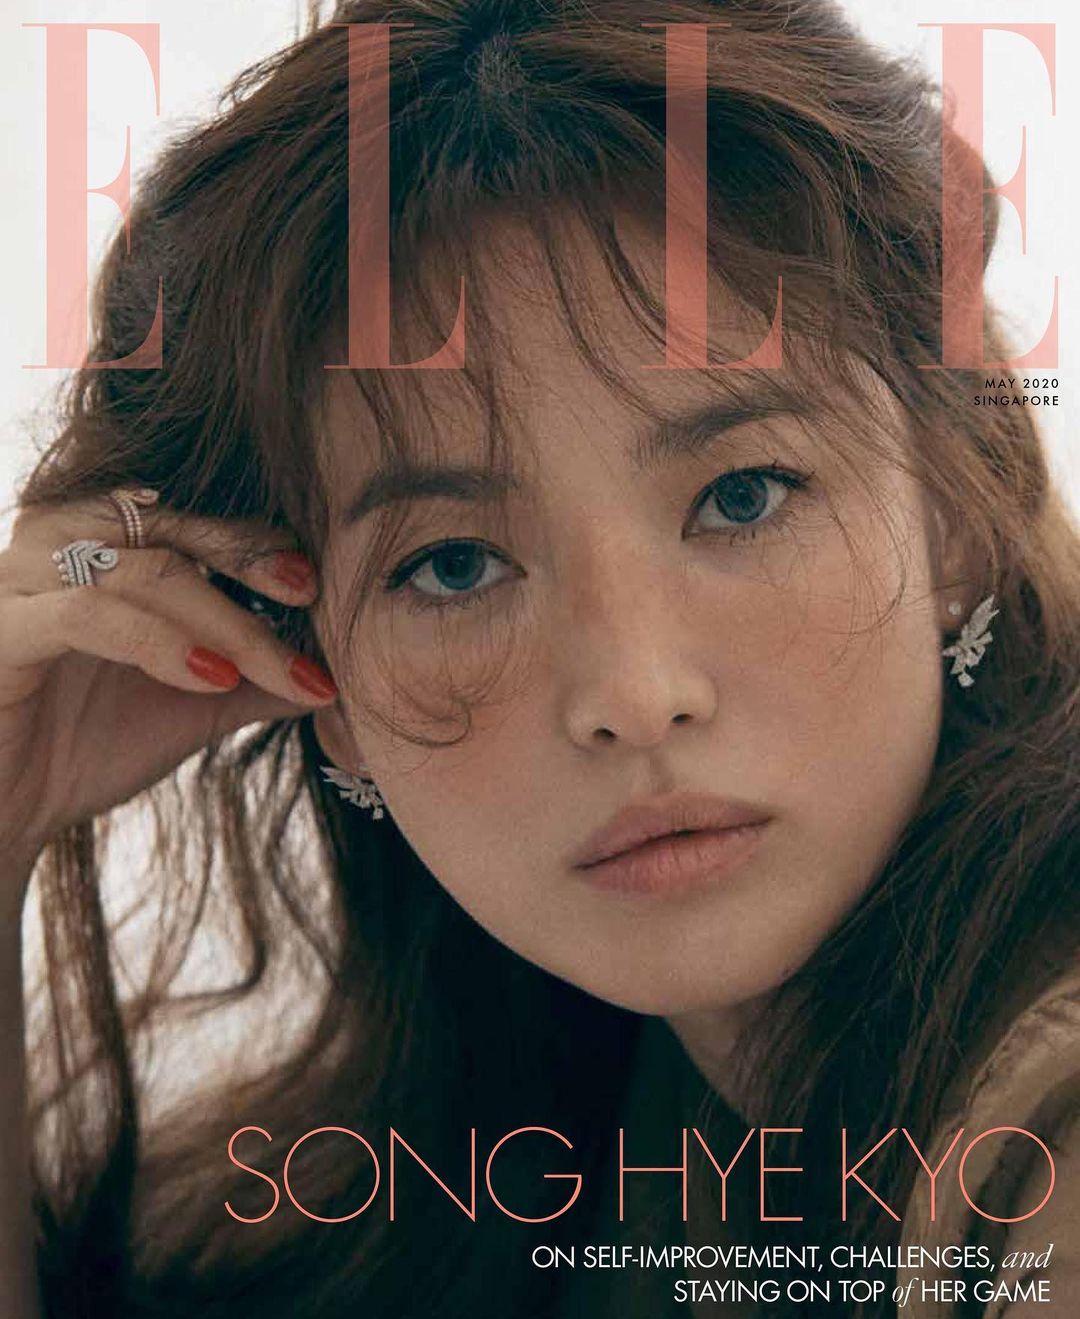 Song Hye Kyo chụp ảnh trên bìa tạp chí Elle với tạo hình ấn tượng với lối makeup mới lạ, đánh má giả tàn nhang, kết hợp với kiểu tóc xoăn trẻ trung, cá tính. (Ảnh: kyo1122)